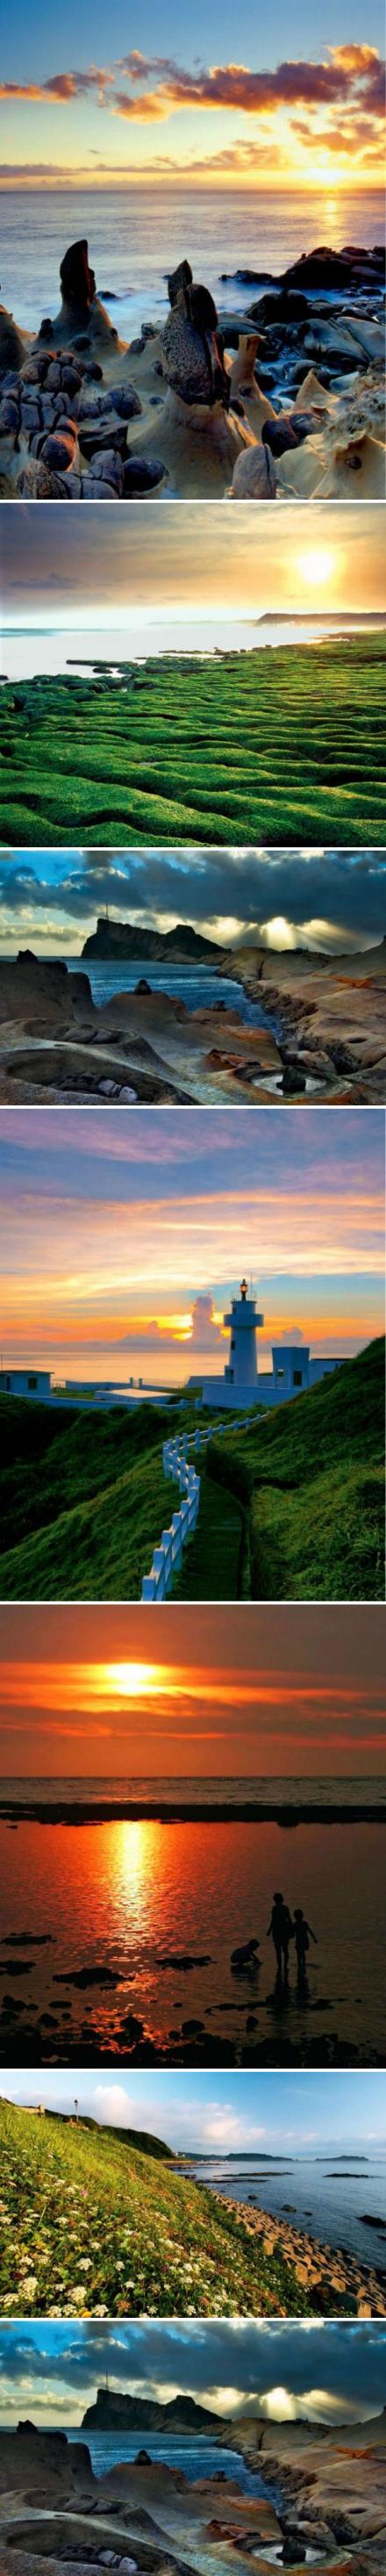 【台湾最美北海岸】蔚蓝无边际的海水、绵延的白沙滩、耸立的灯塔、这一切都像是一部爱情电影的完美布景。当7月来到时， 大片的花海如约盛开，与碧海蓝天相映，直教人赞叹上天对北海岸的偏爱。